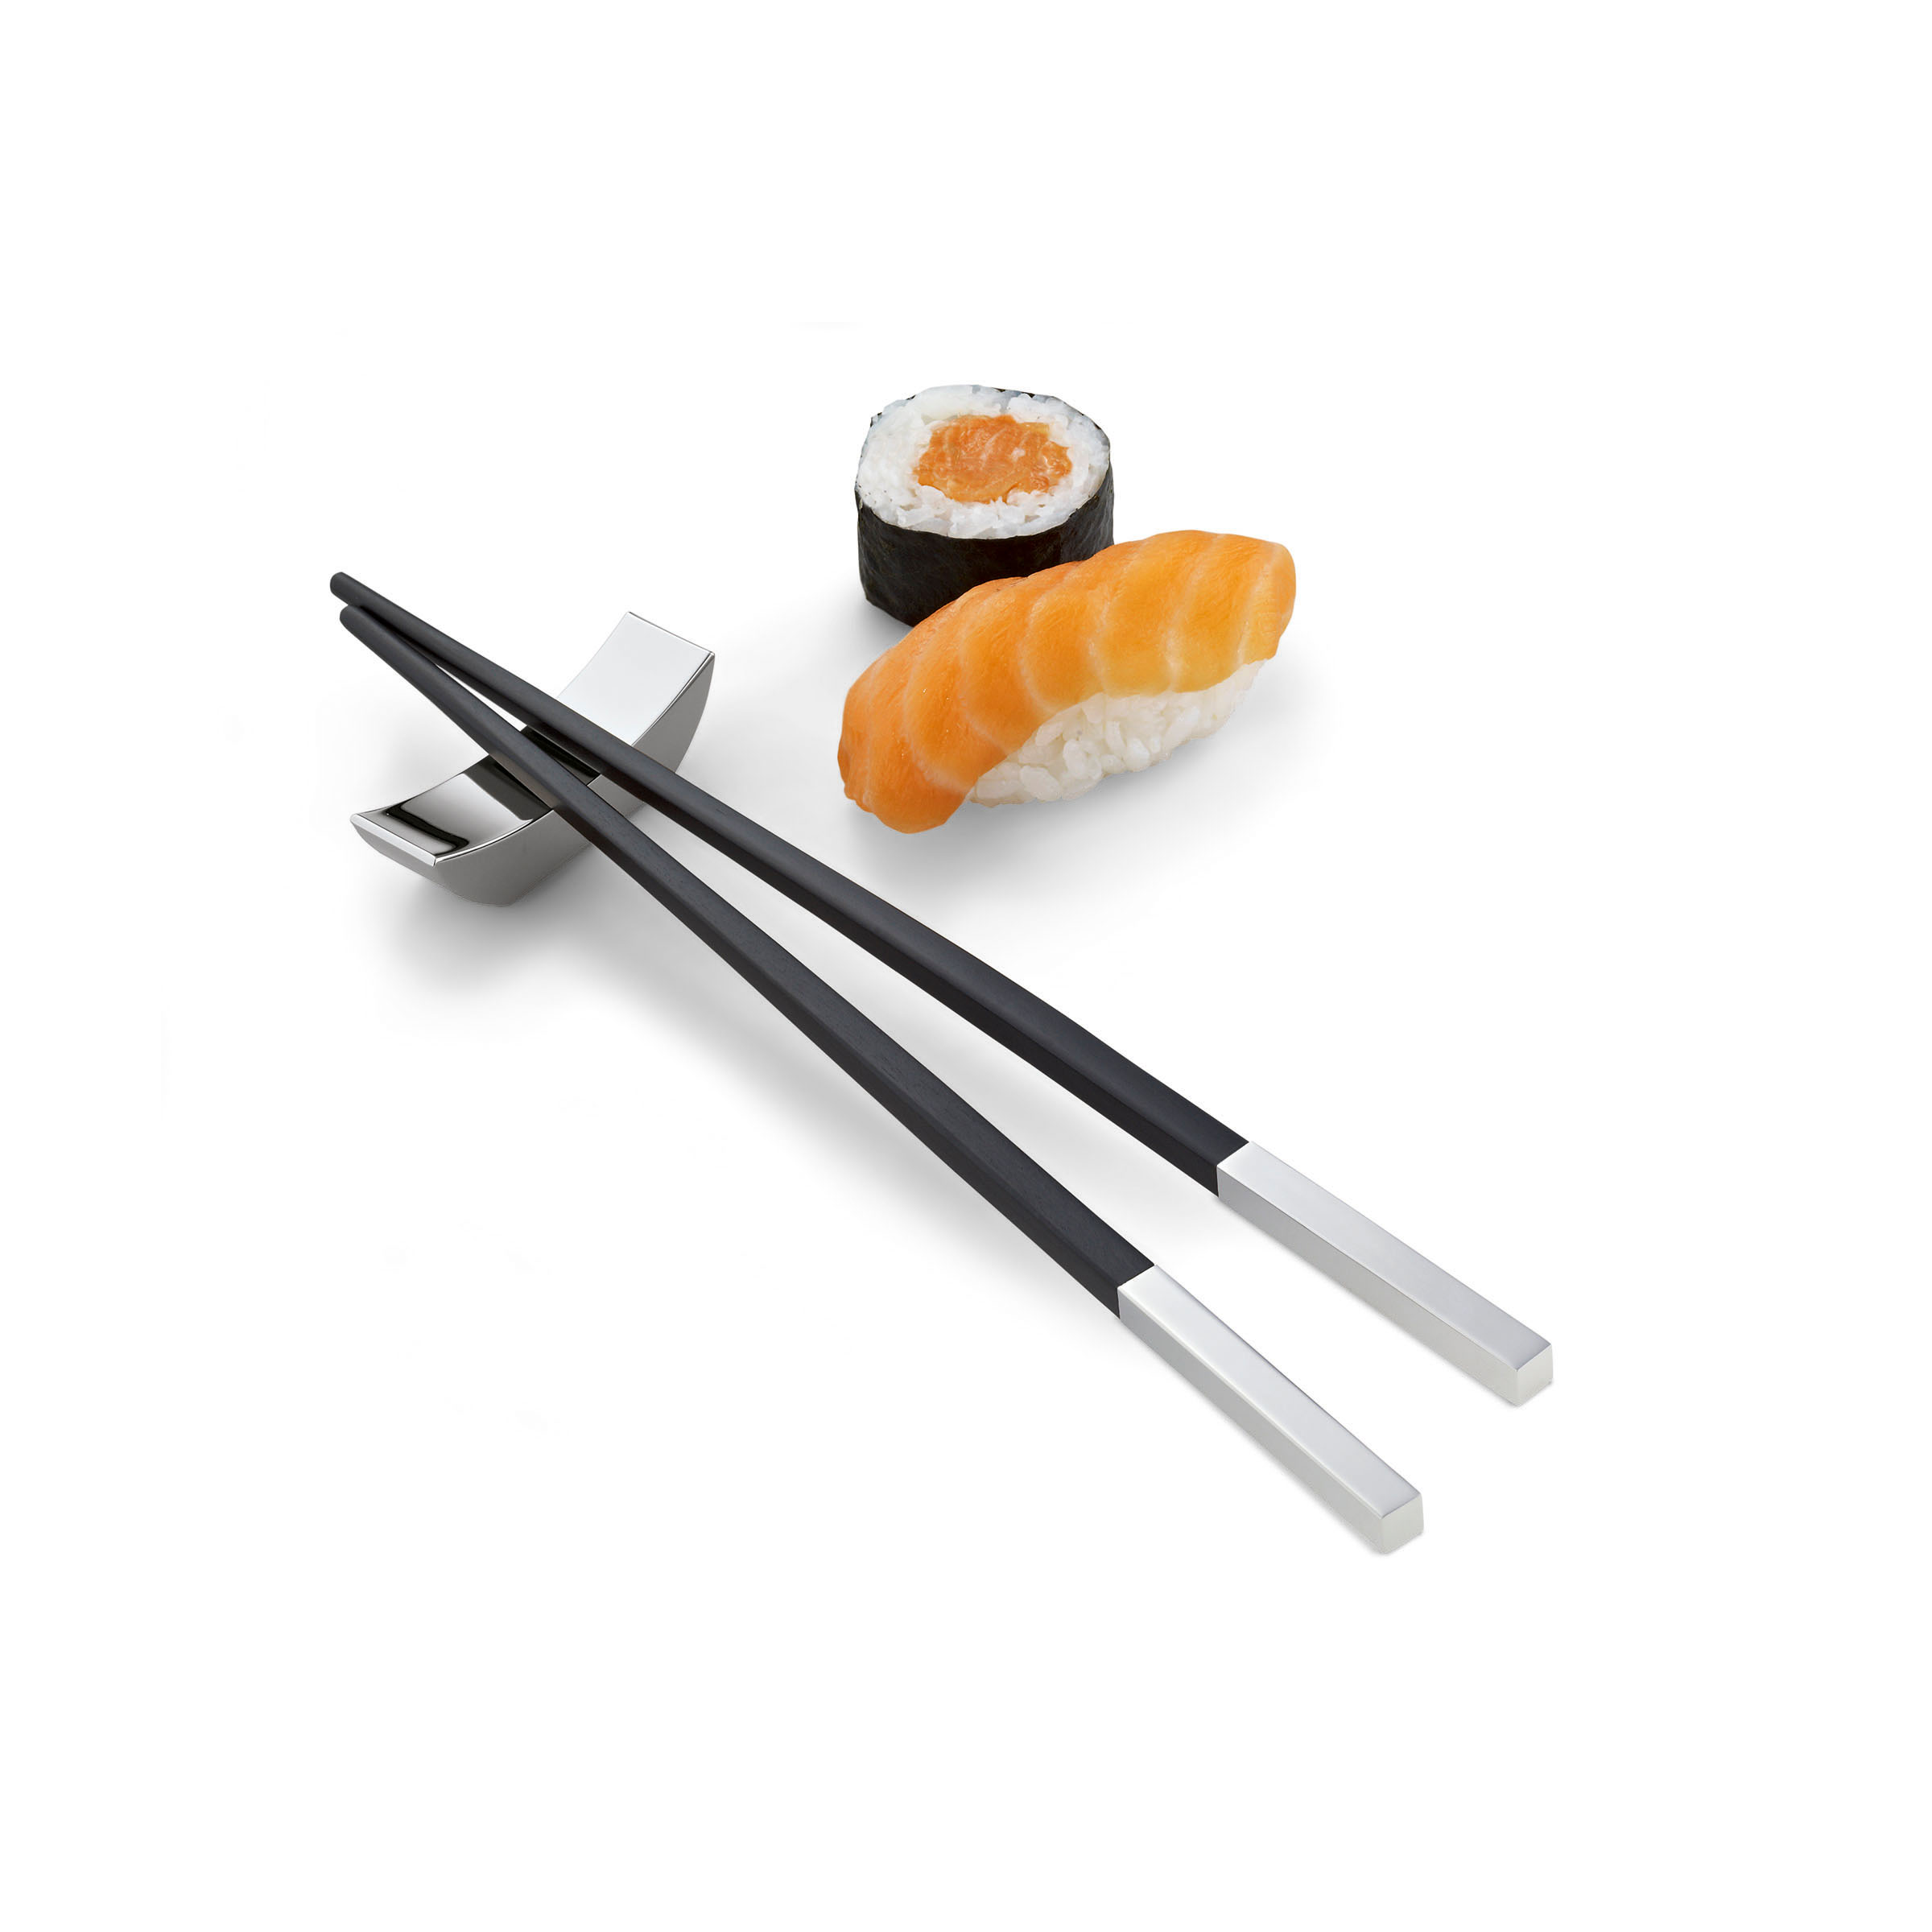 Палочки для суши